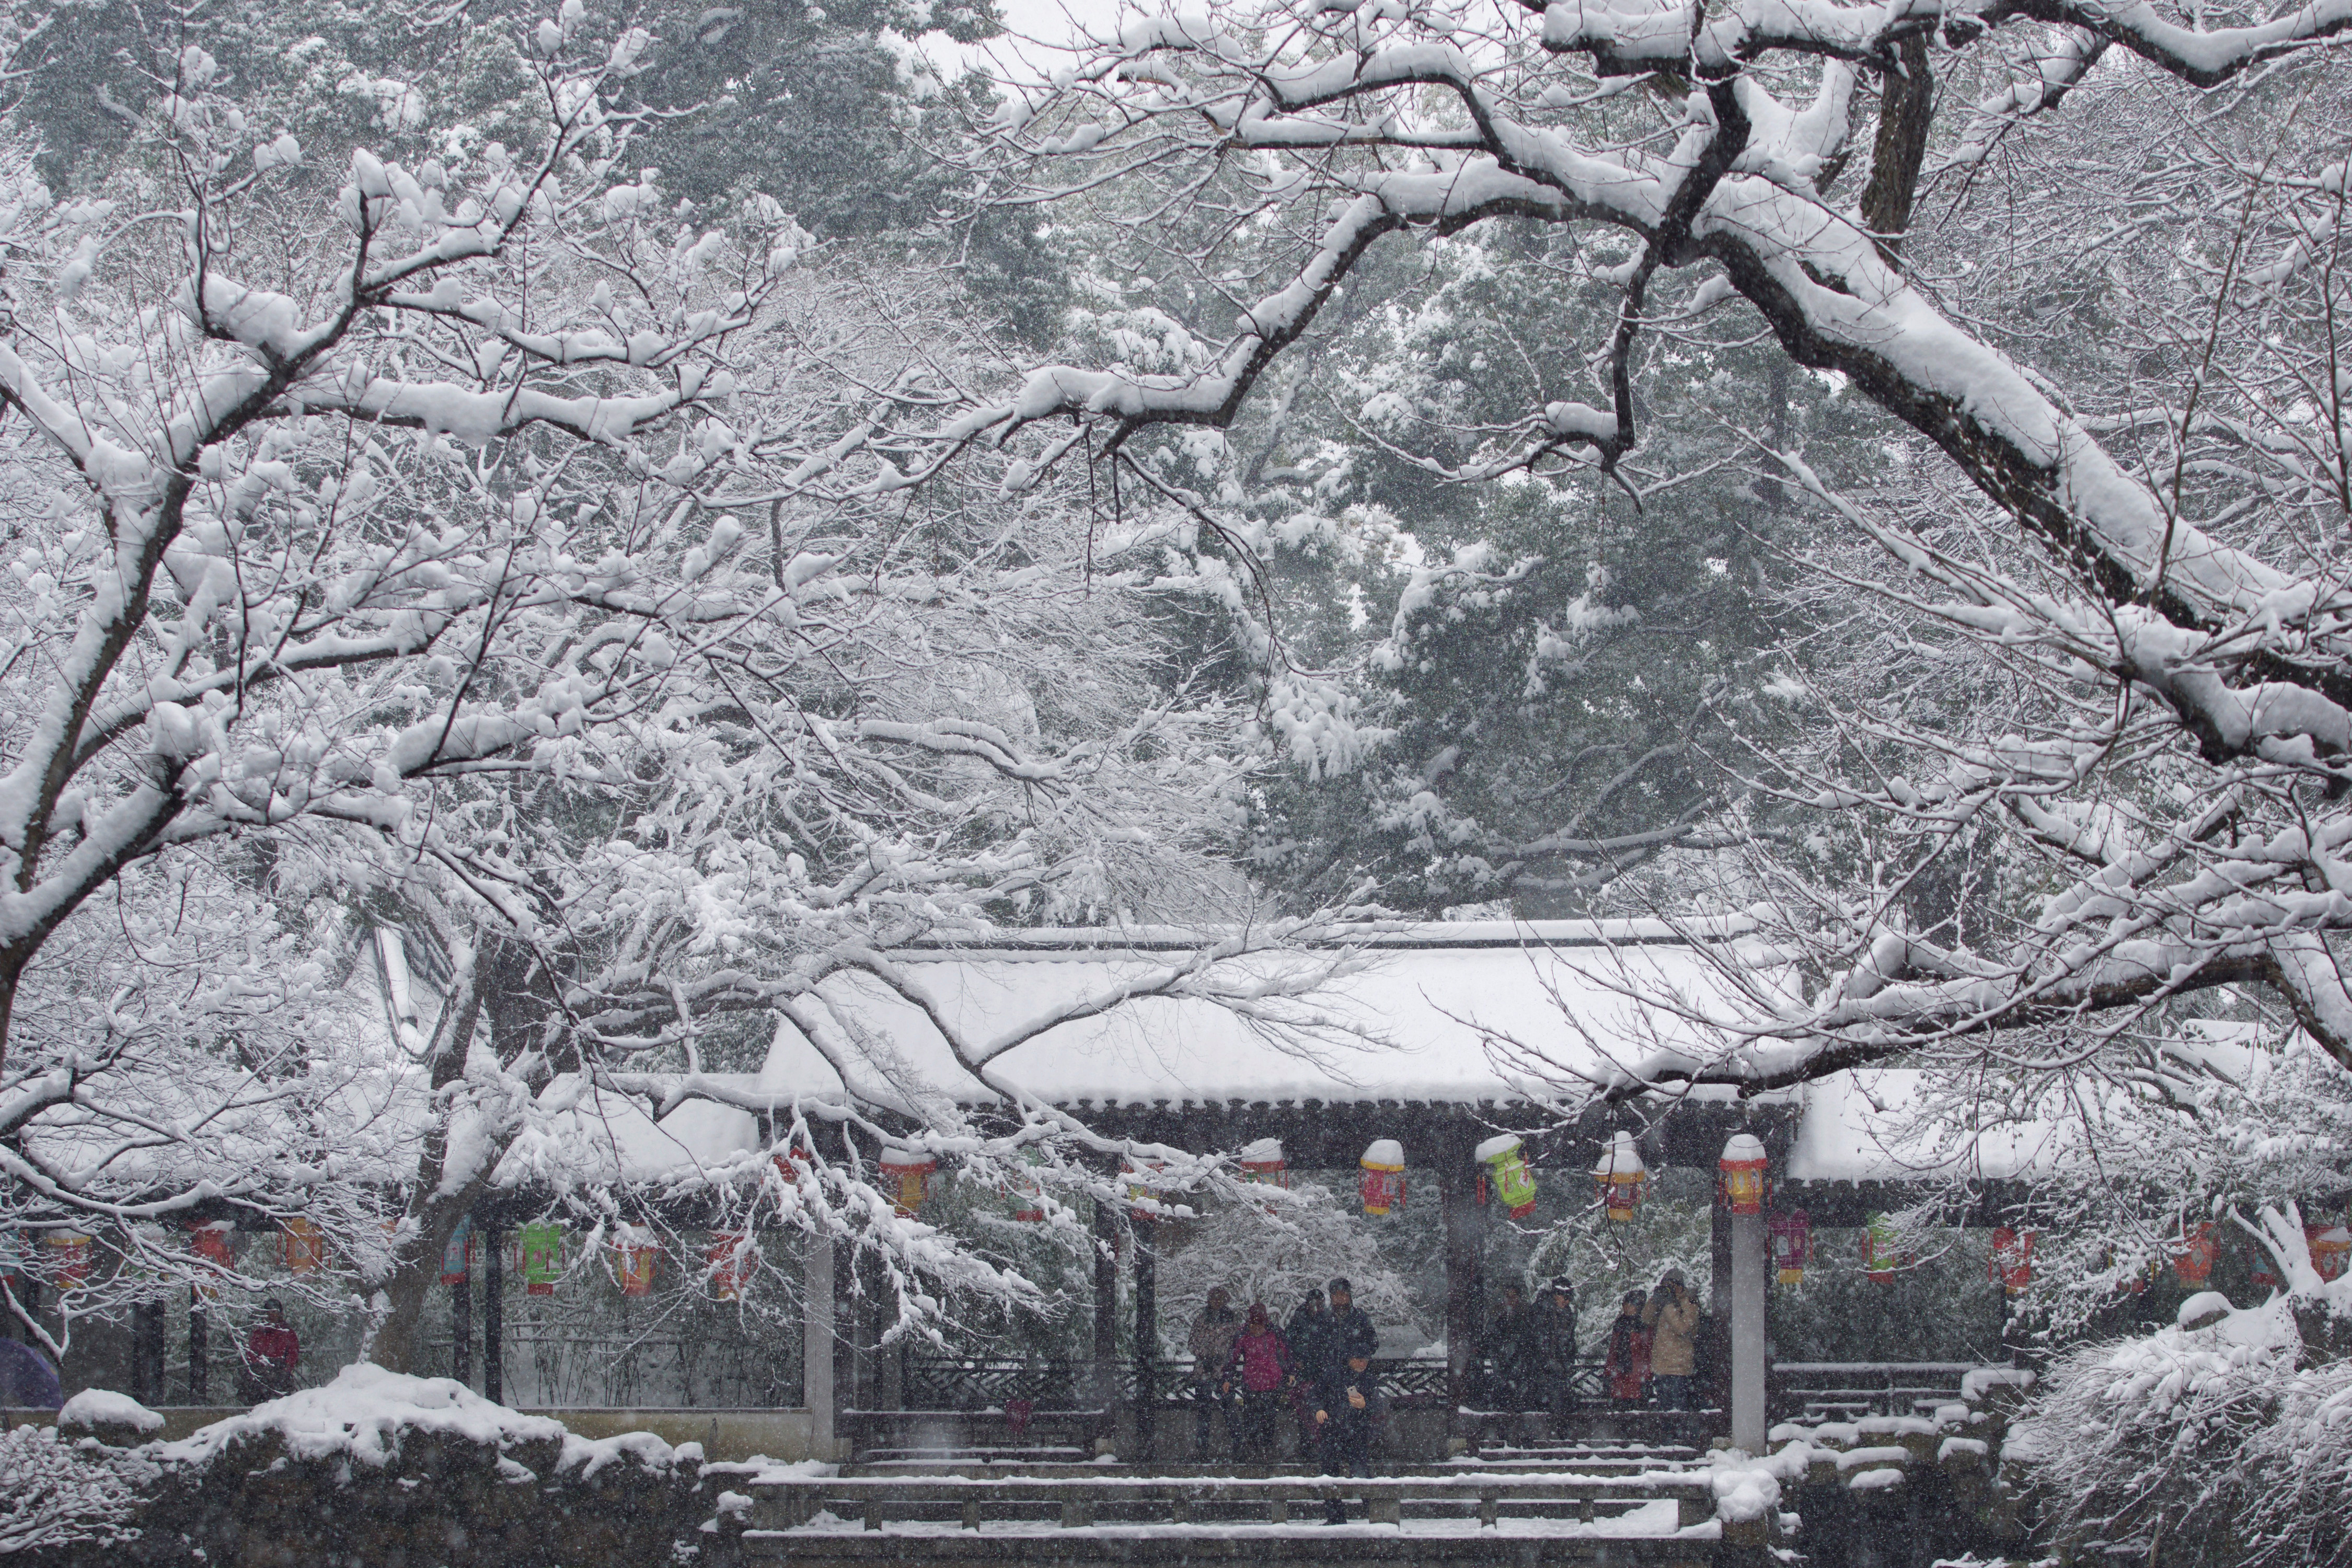 People visit the snow-covered Jichang Garden in Wuxi, Jiangsu